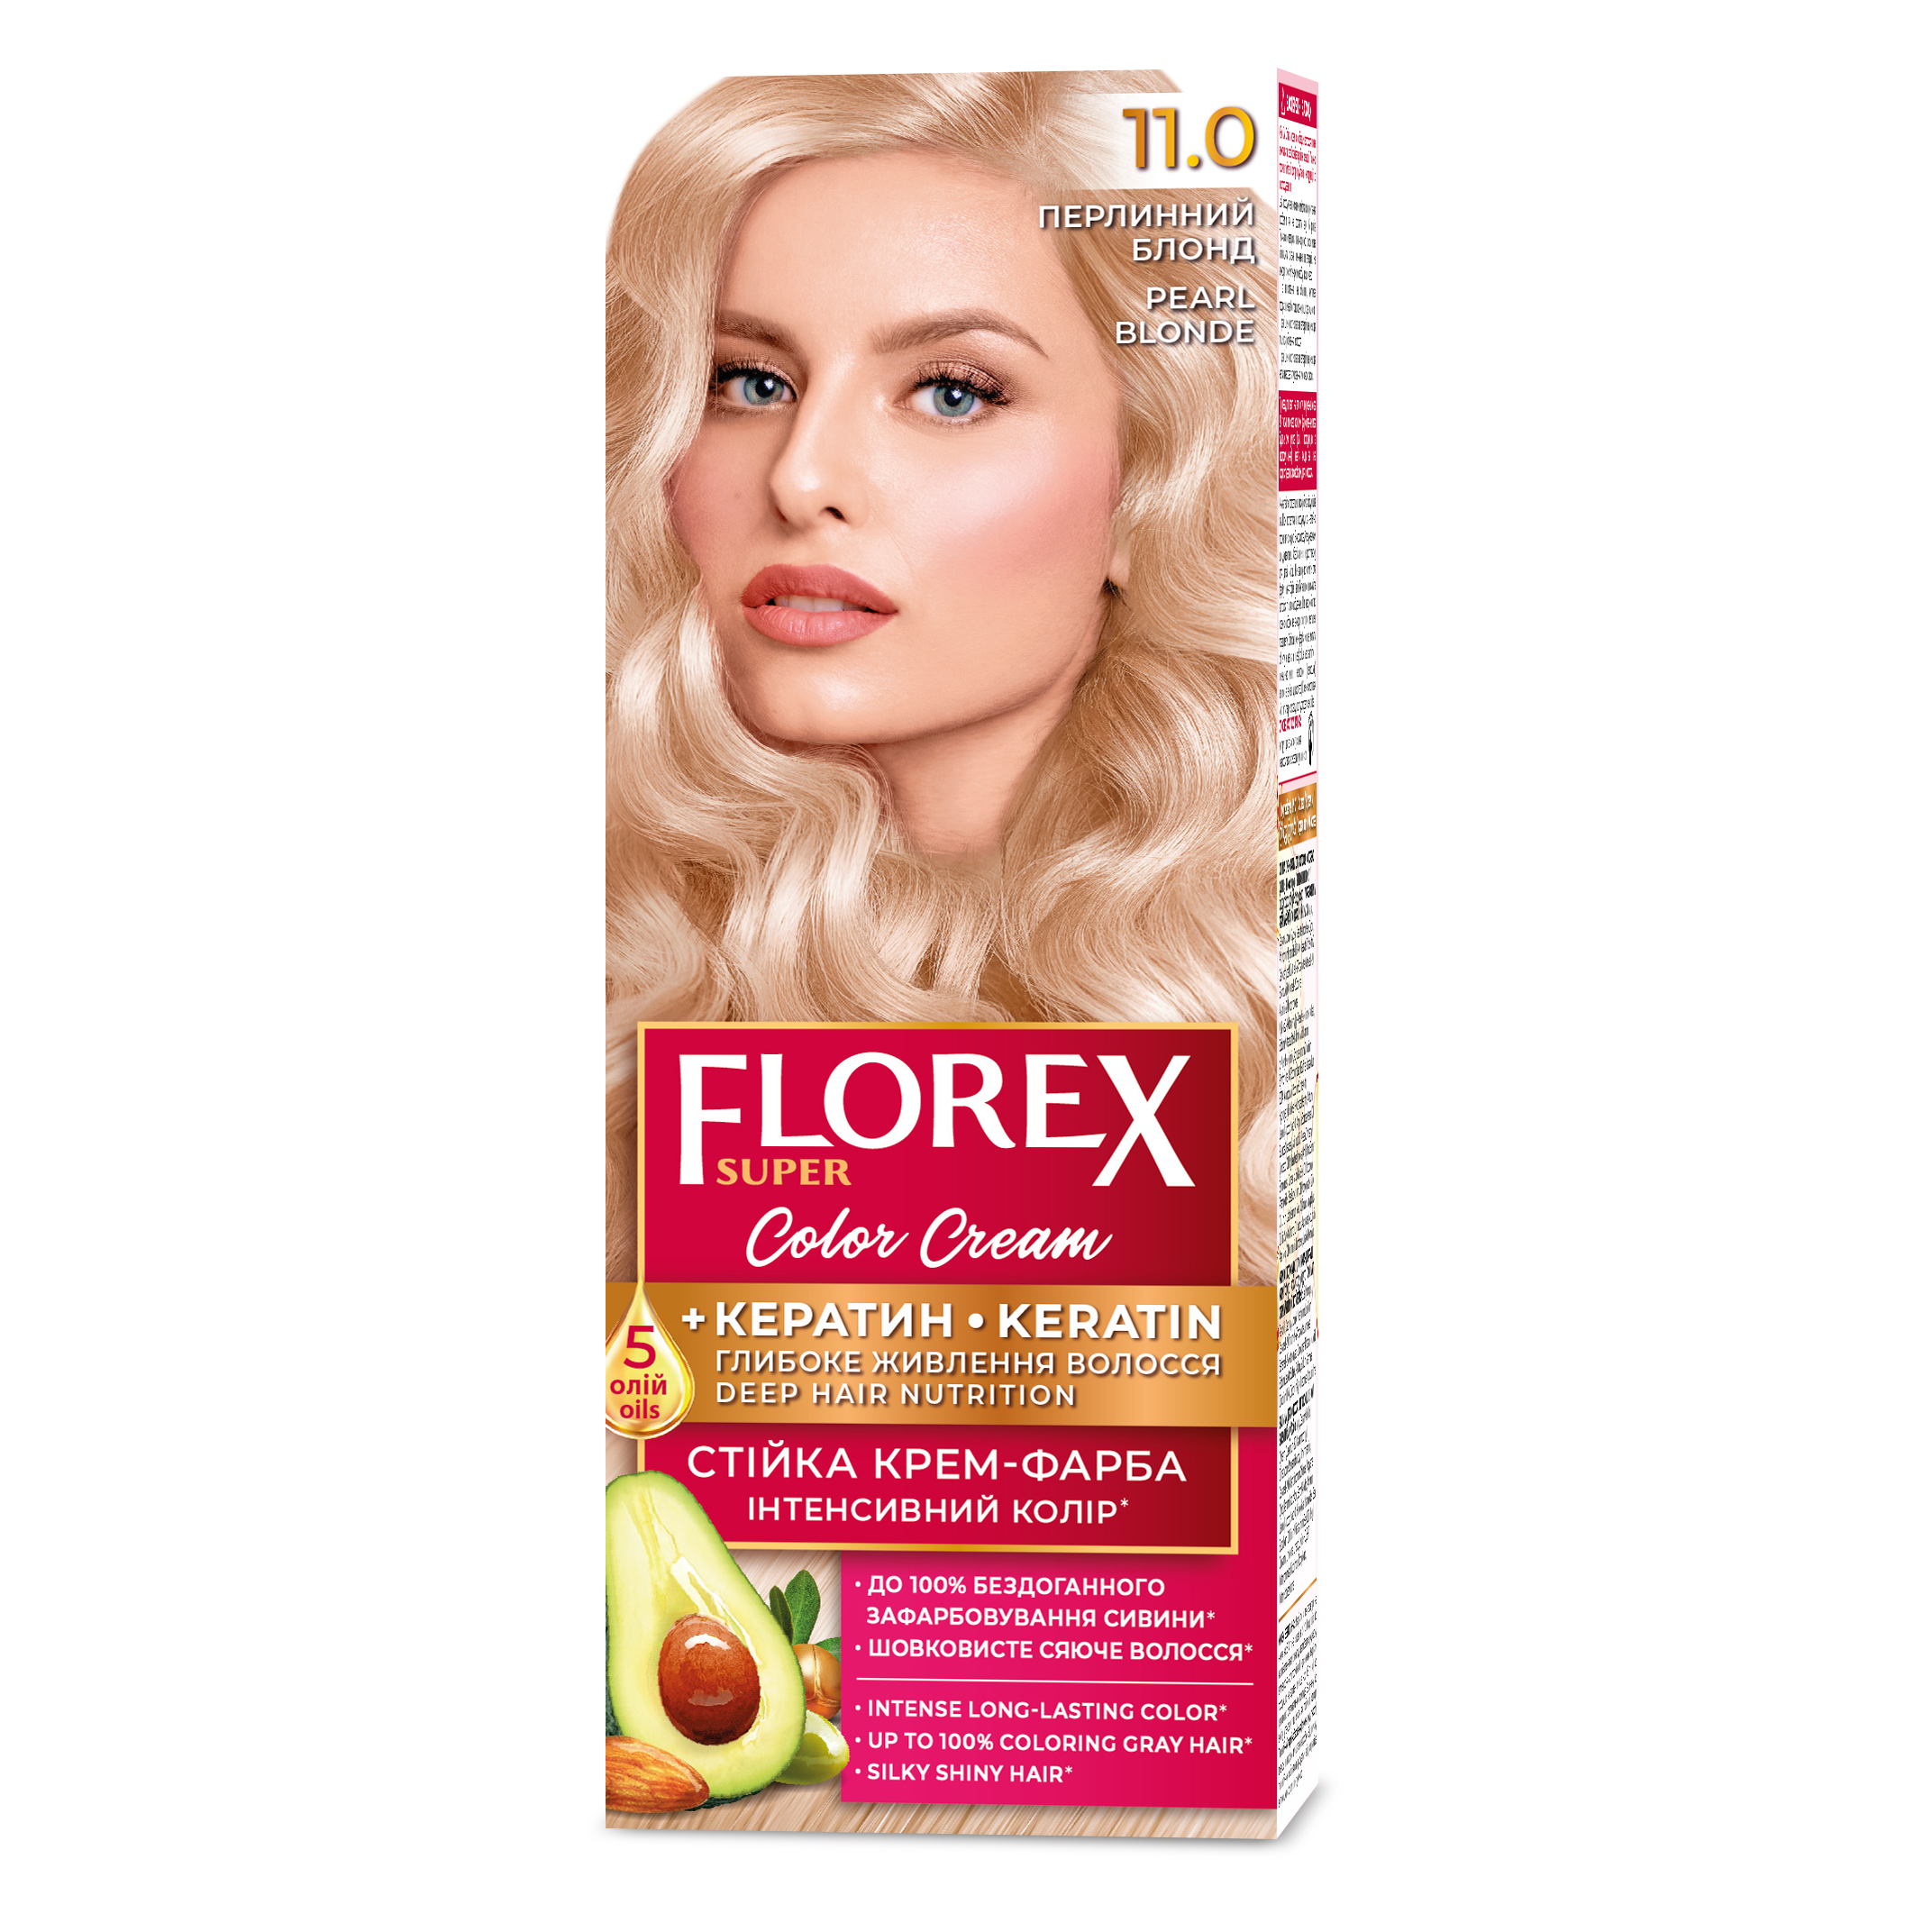 Стійка крем-фарба для волосся Florex Super Перлинний блонд 11.0